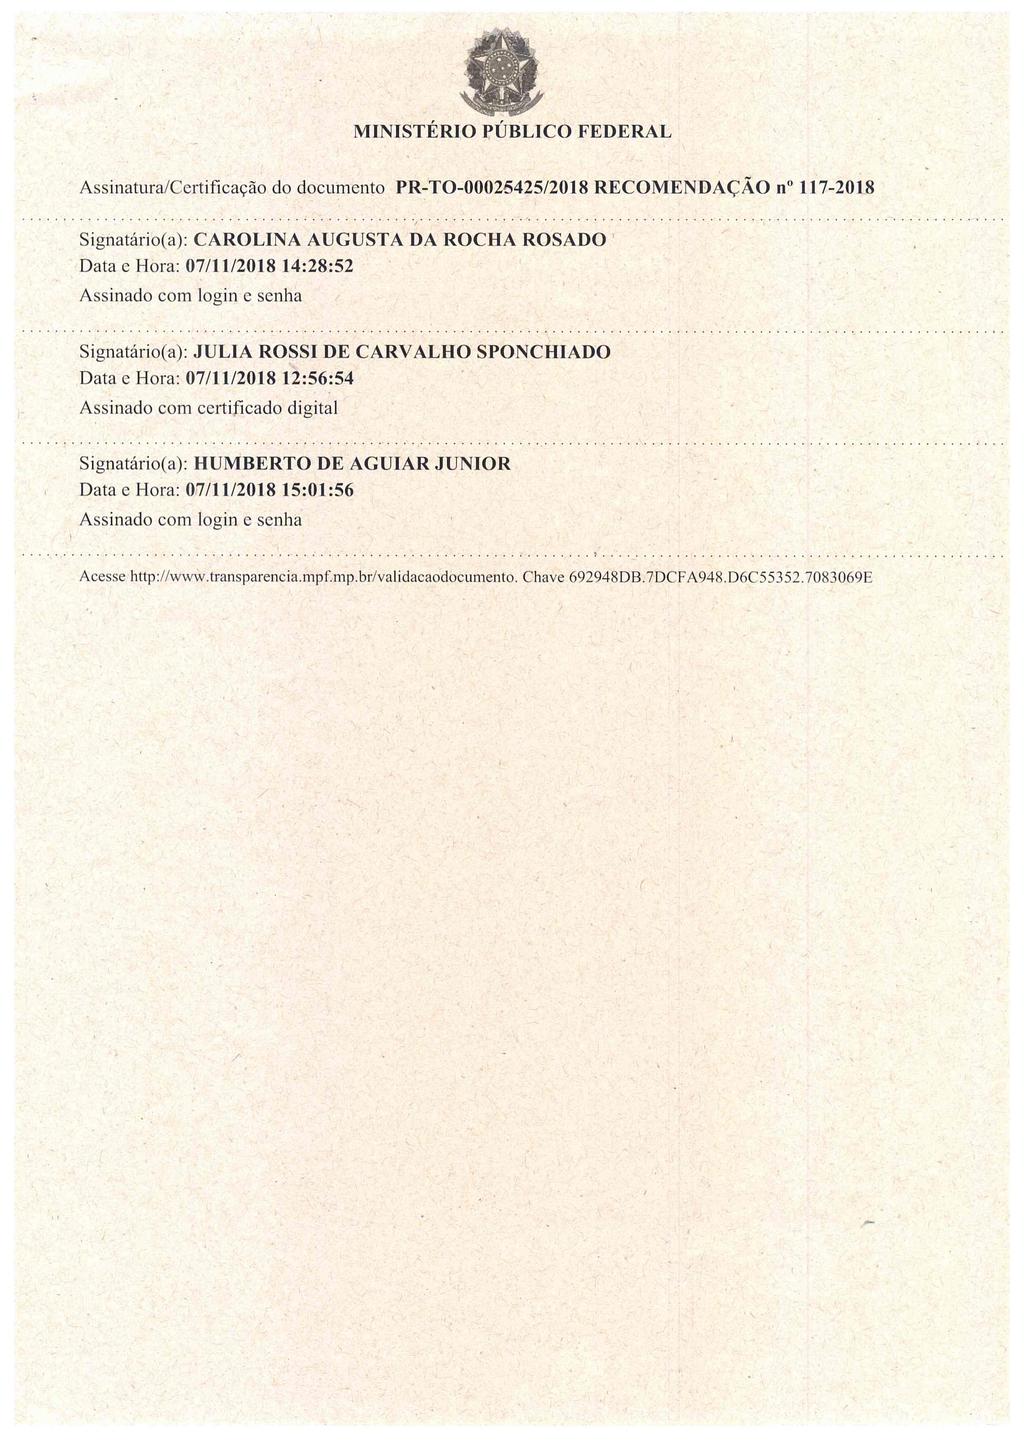 MINISTÉRIO PÚBLICO FEDERAL Assinatura/Certificação do documento RECOMENDAÇÃO no 1117-2018 Signatário(a): CAROLINA AUGUSTA DA ROCHA ROSADO Data e Hora: 07/11/2018 14:28:52 Assinado com login e senha